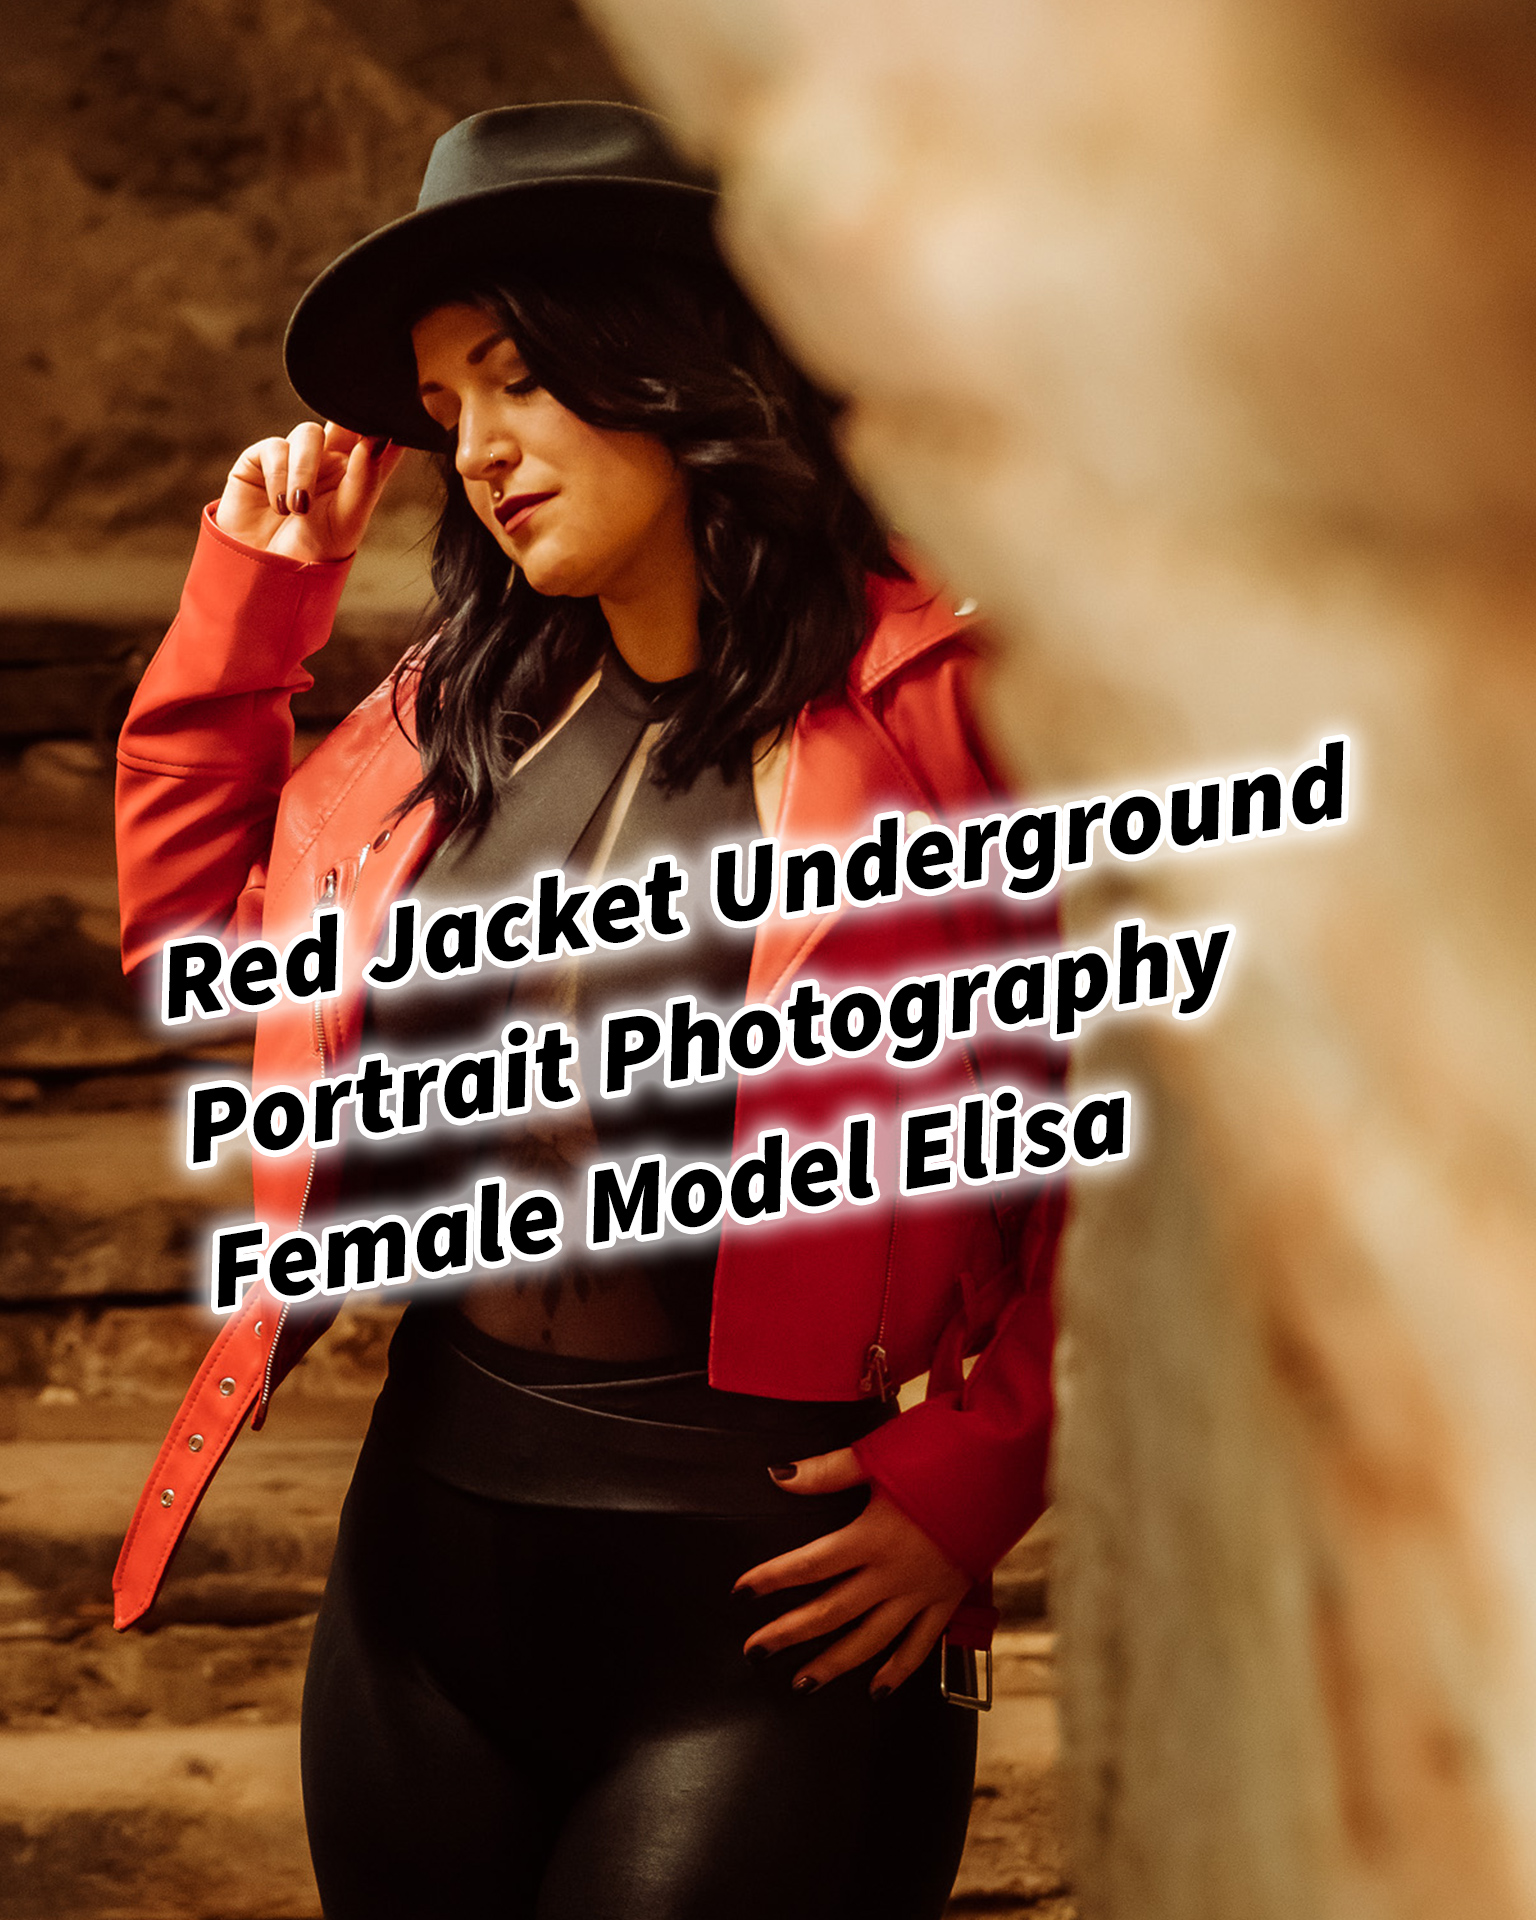 Red Jacket Underground Portrait Photography Female Tattoo Model Elisa